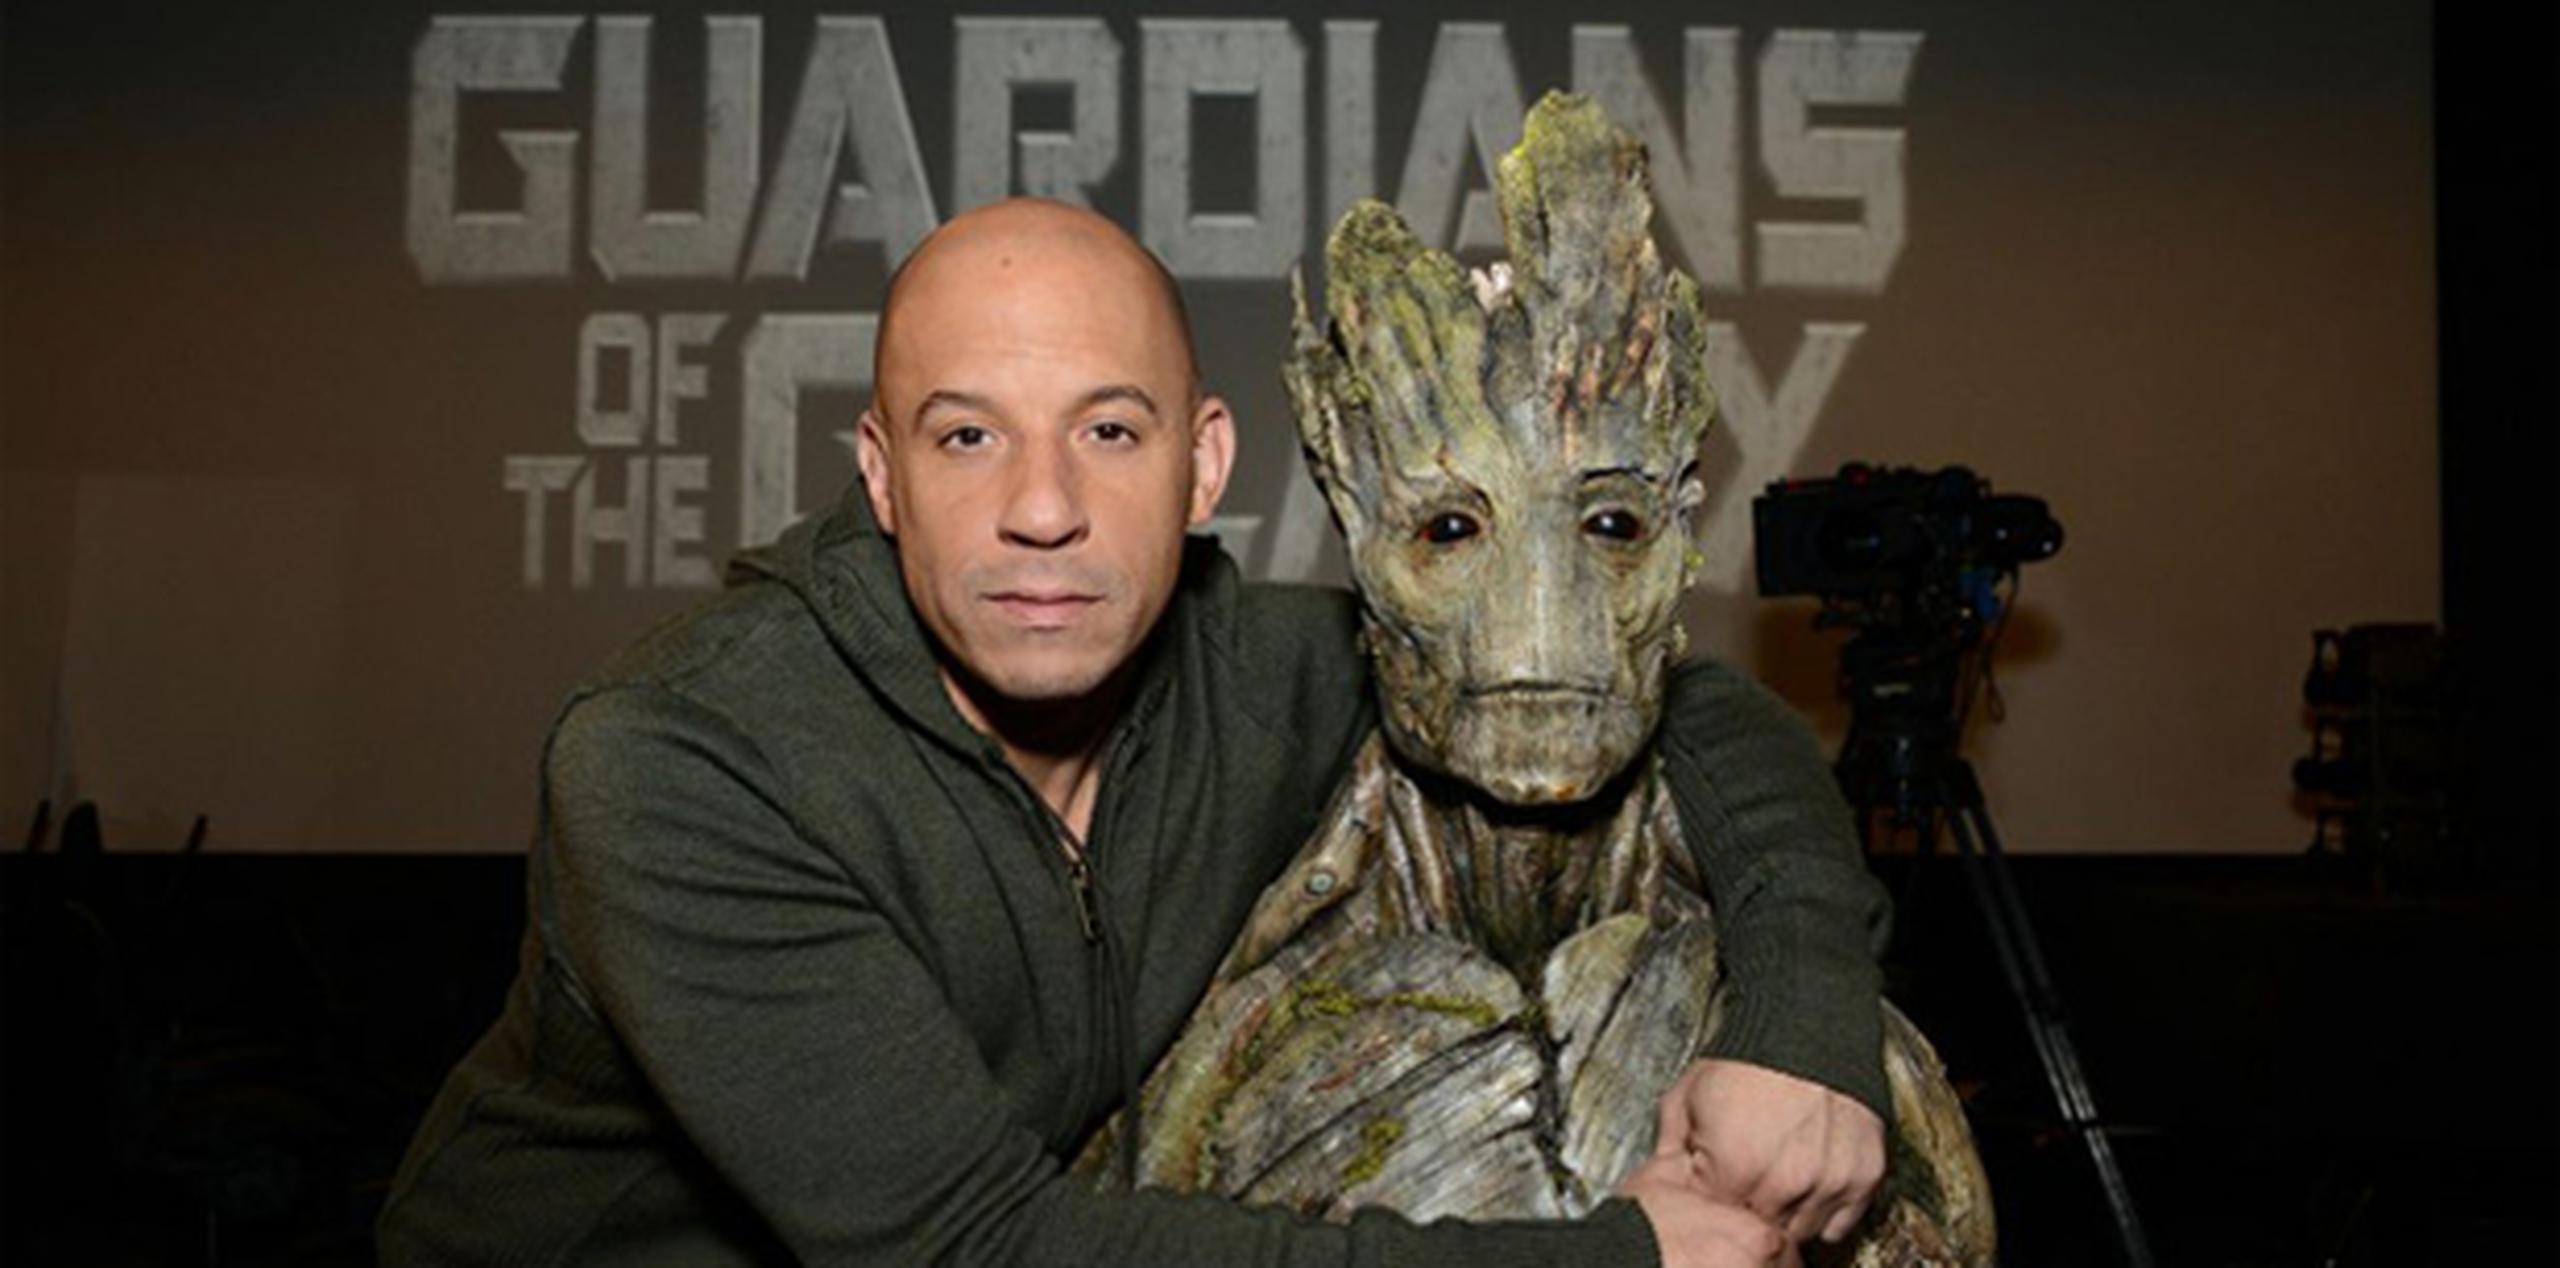 Diesel presta su voz al alienígena "Groot" en el filme "Guardians of the Galaxy".